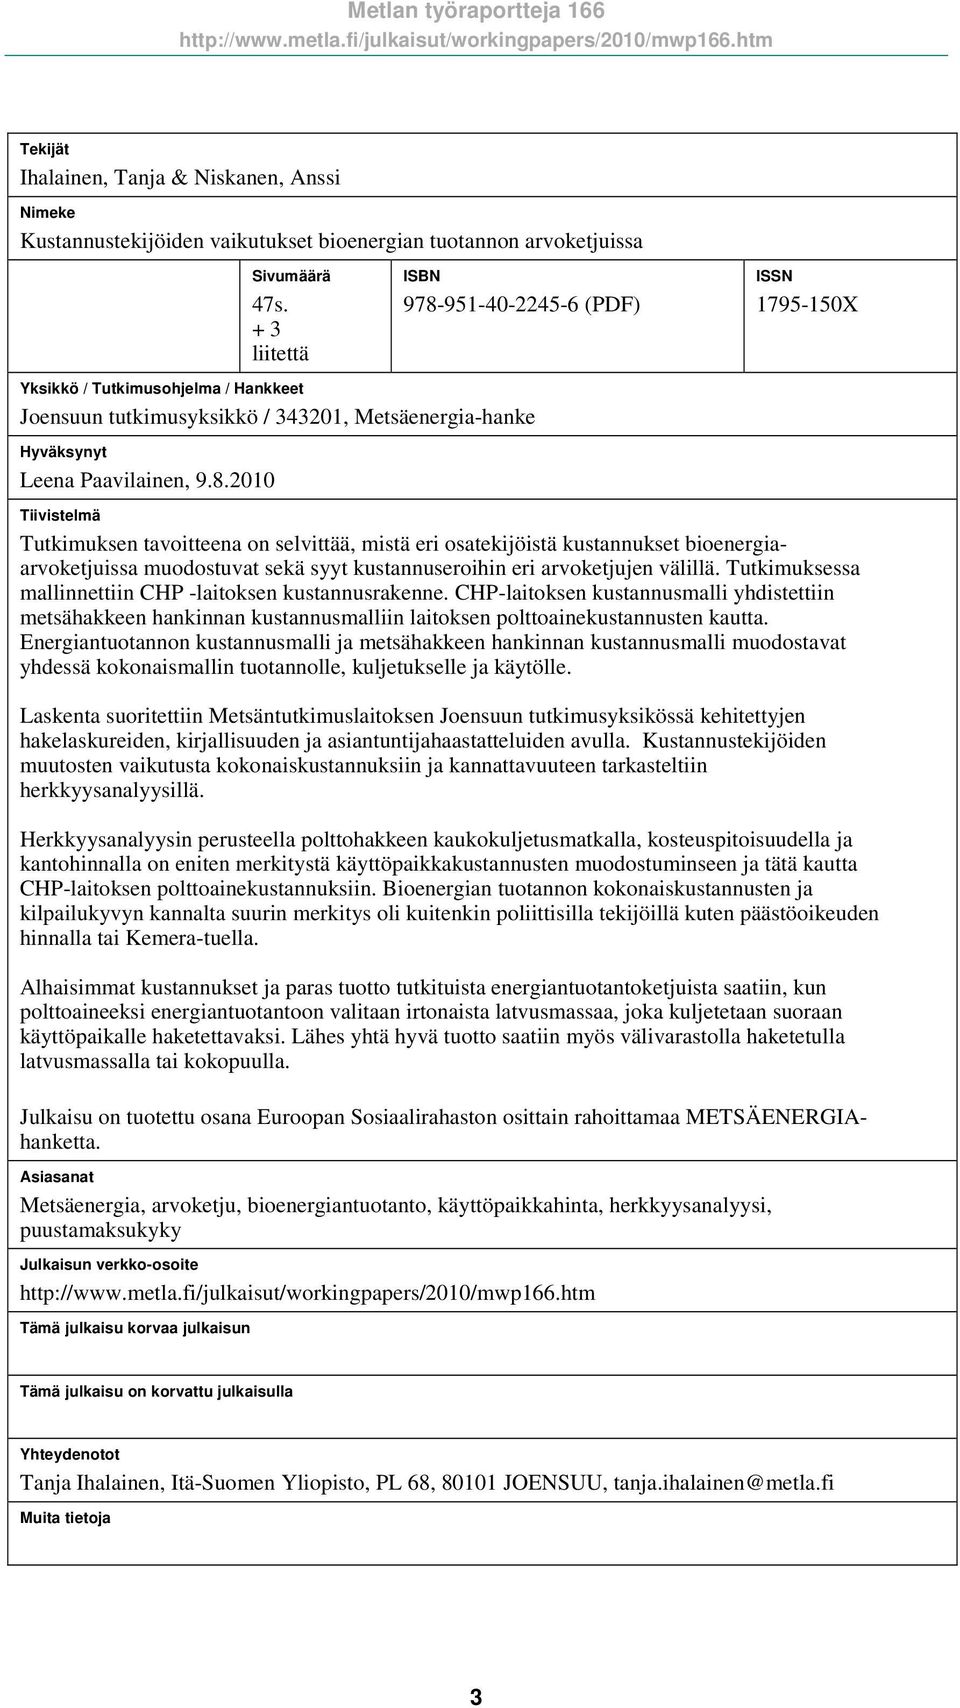 951-40-2245-6 (PDF) ISSN 1795-150X Yksikkö / Tutkimusohjelma / Hankkeet Joensuun tutkimusyksikkö / 343201, Metsäenergia-hanke Hyväksynyt Leena Paavilainen, 9.8.